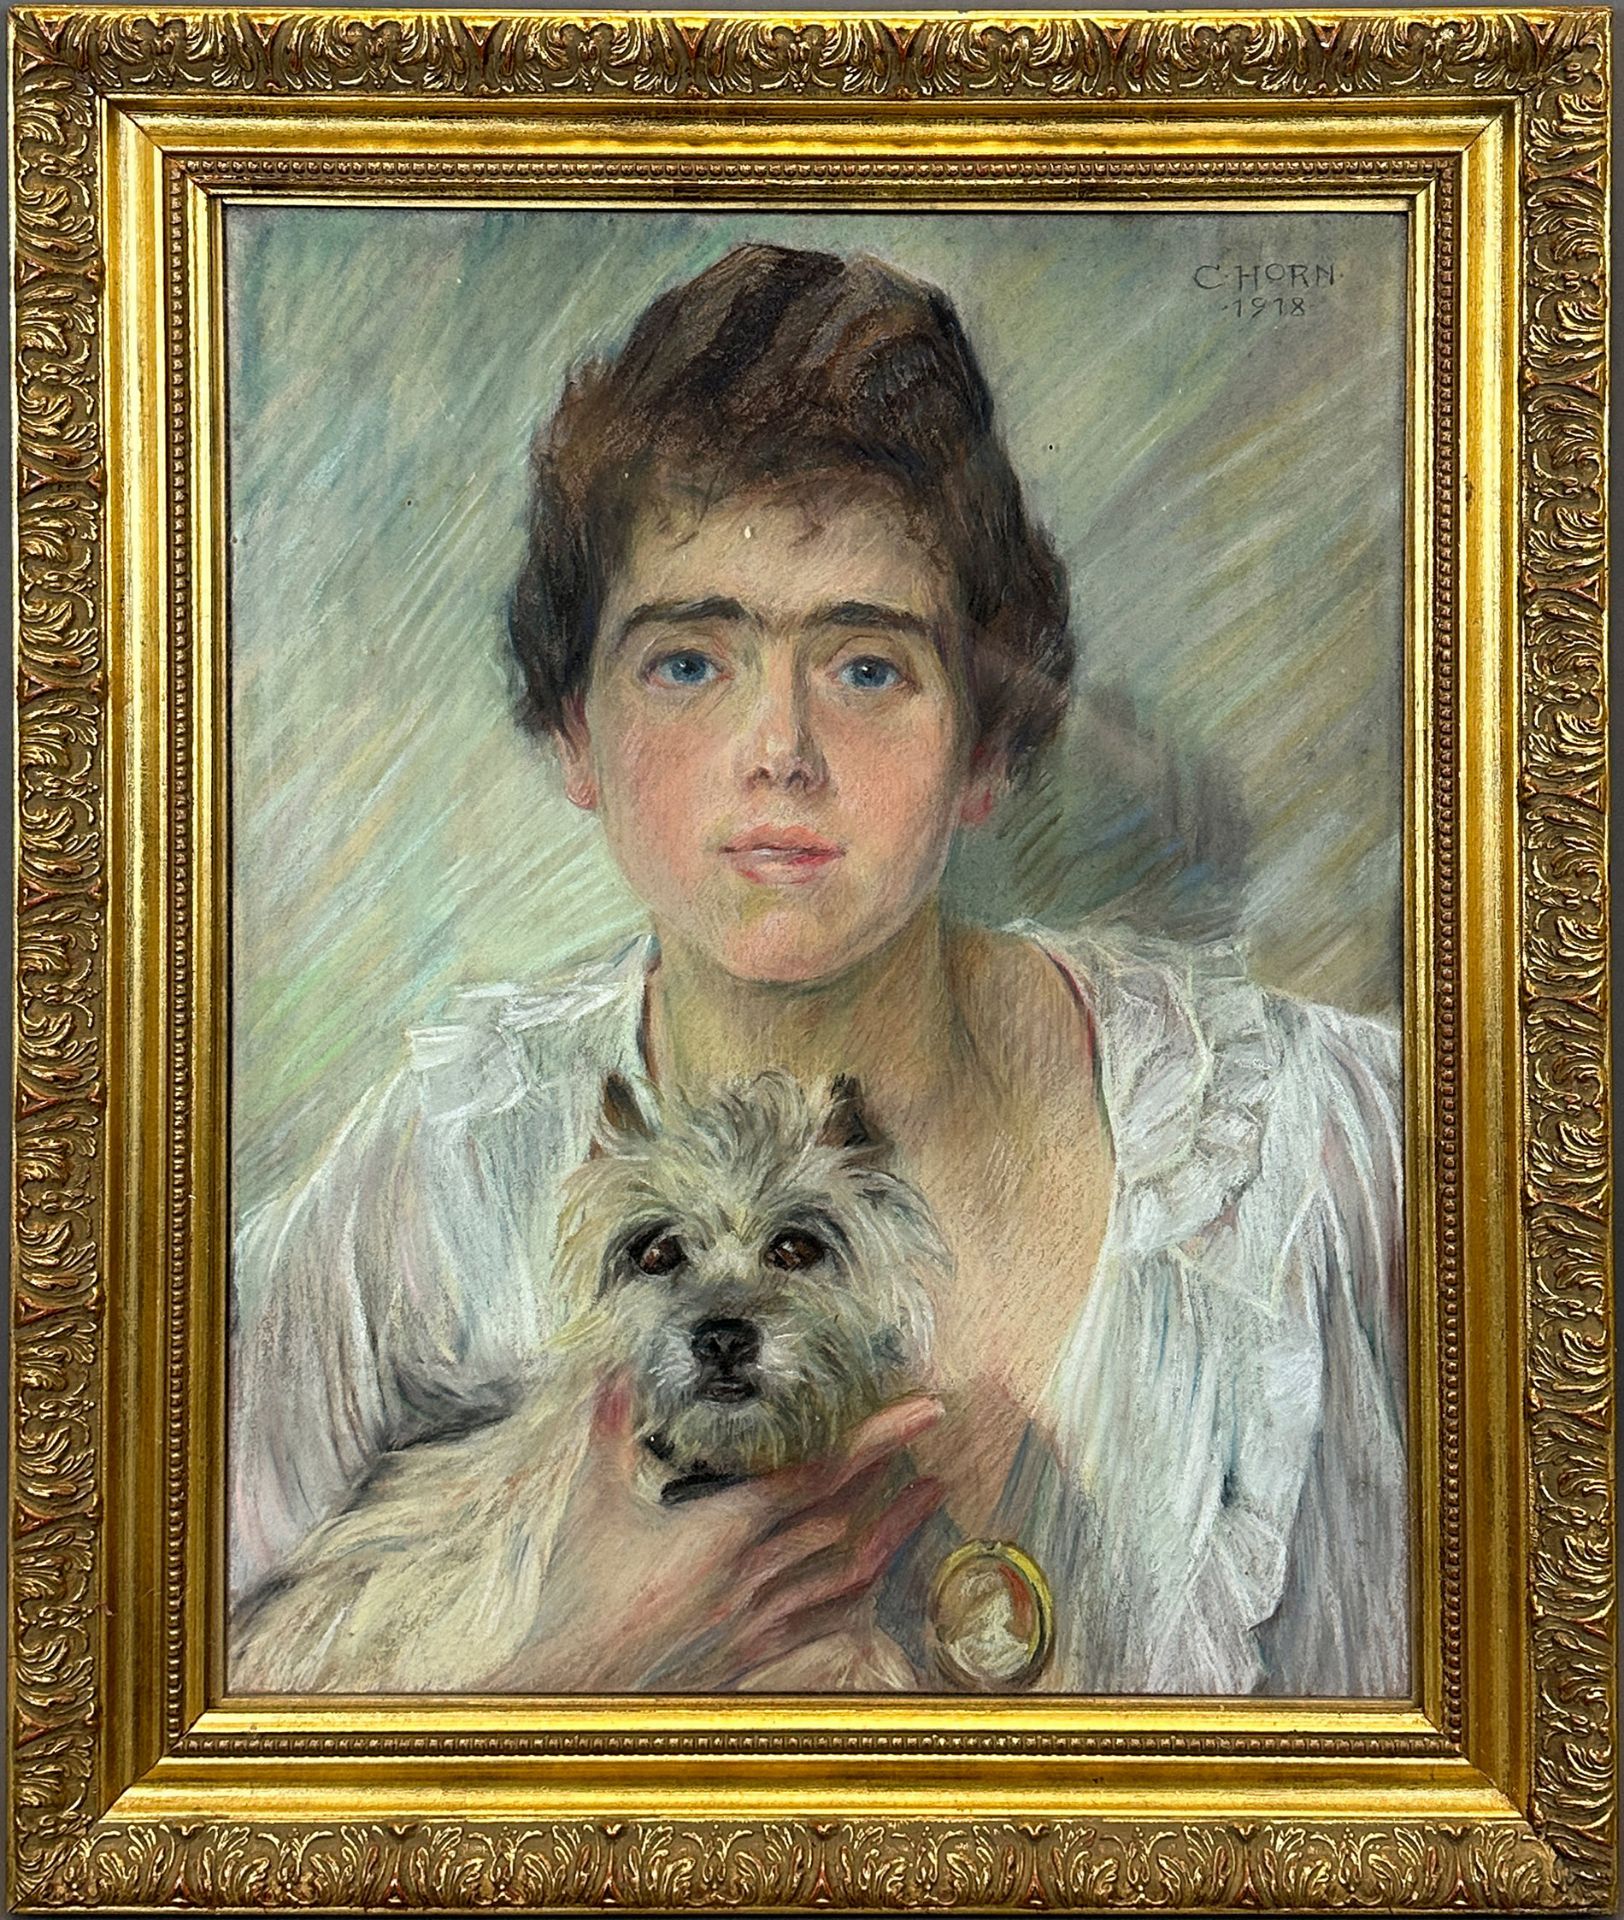 Carl HORN (1874 - 1945). Portrait einer jungen Frau mit Terrier. 1918. - Bild 2 aus 11